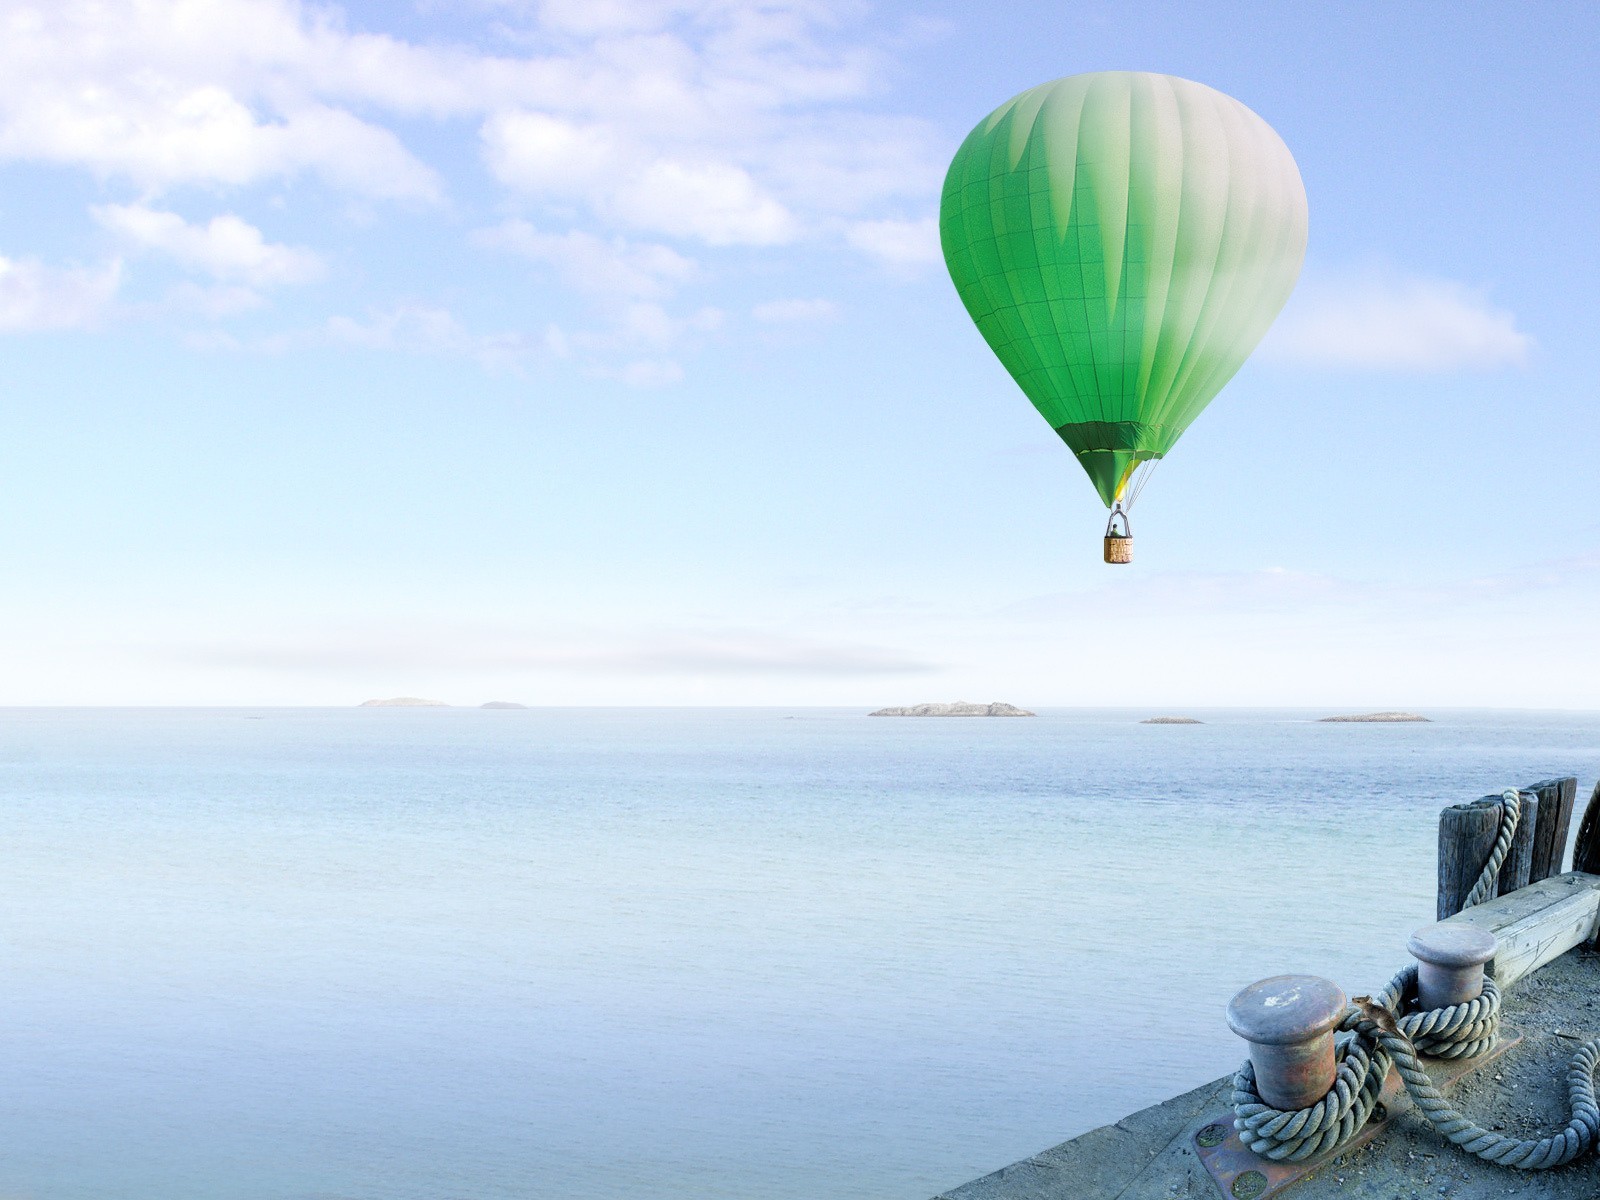 День рождения воздуха. Воздушный шар. Vozdushnyye shar. Воздушные шары в небе. Воздушный шар над морем.